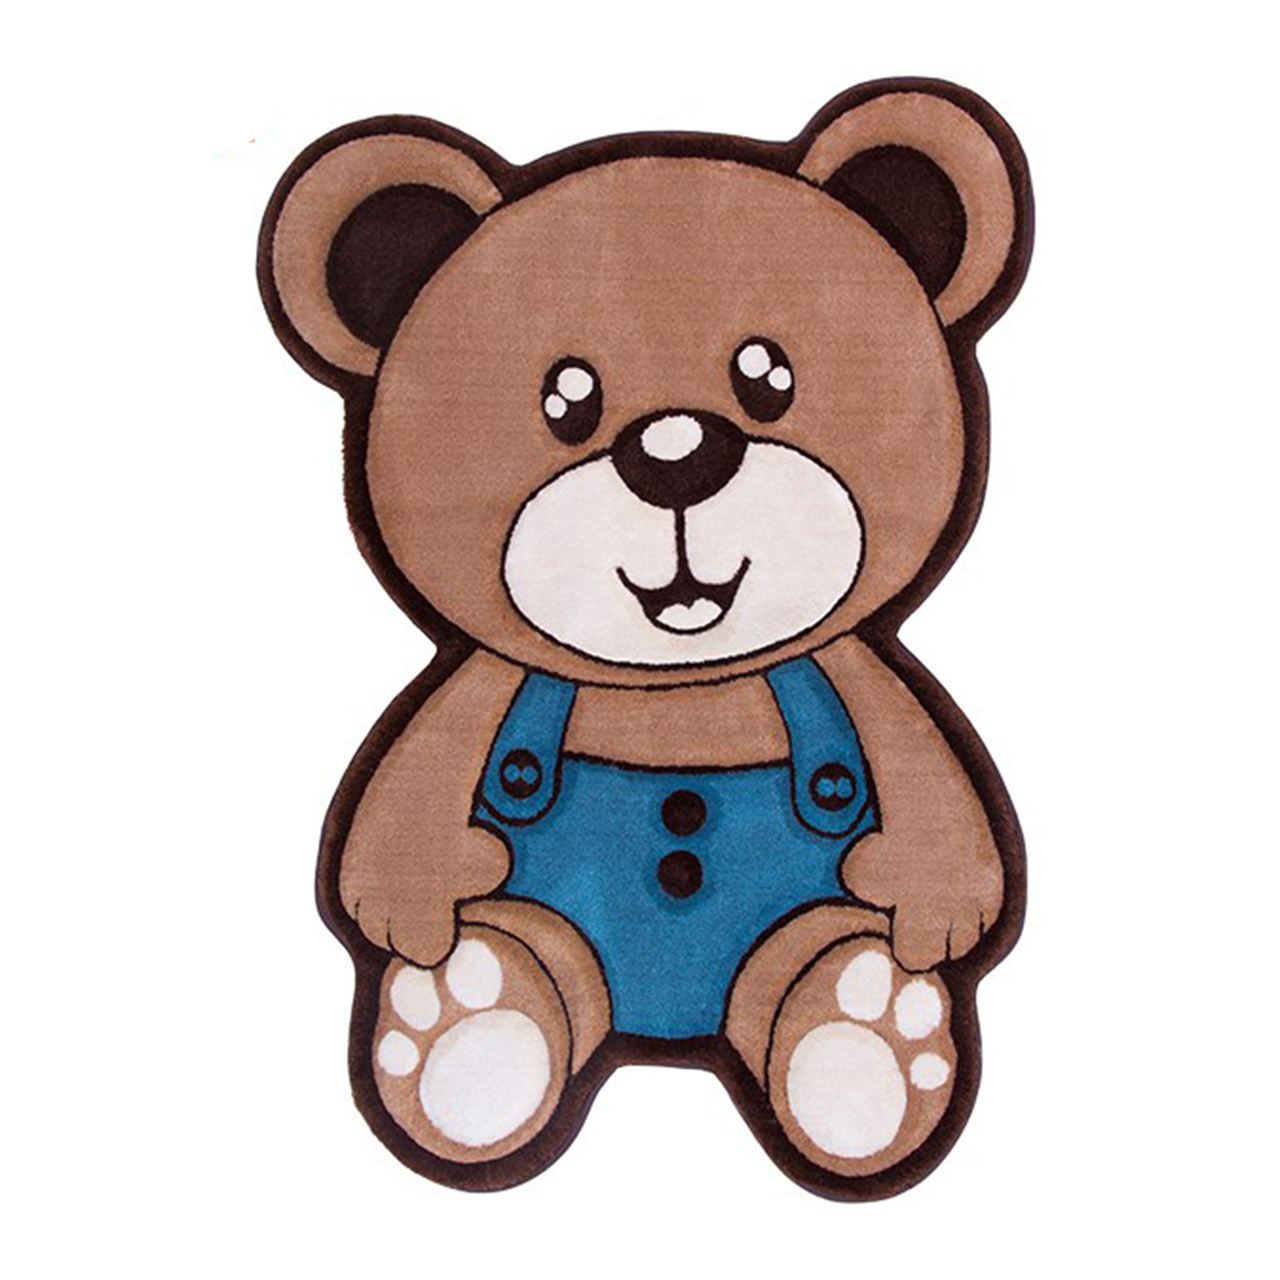 فرش تزیینی زرباف مدل خرس پسر سایز 100×75